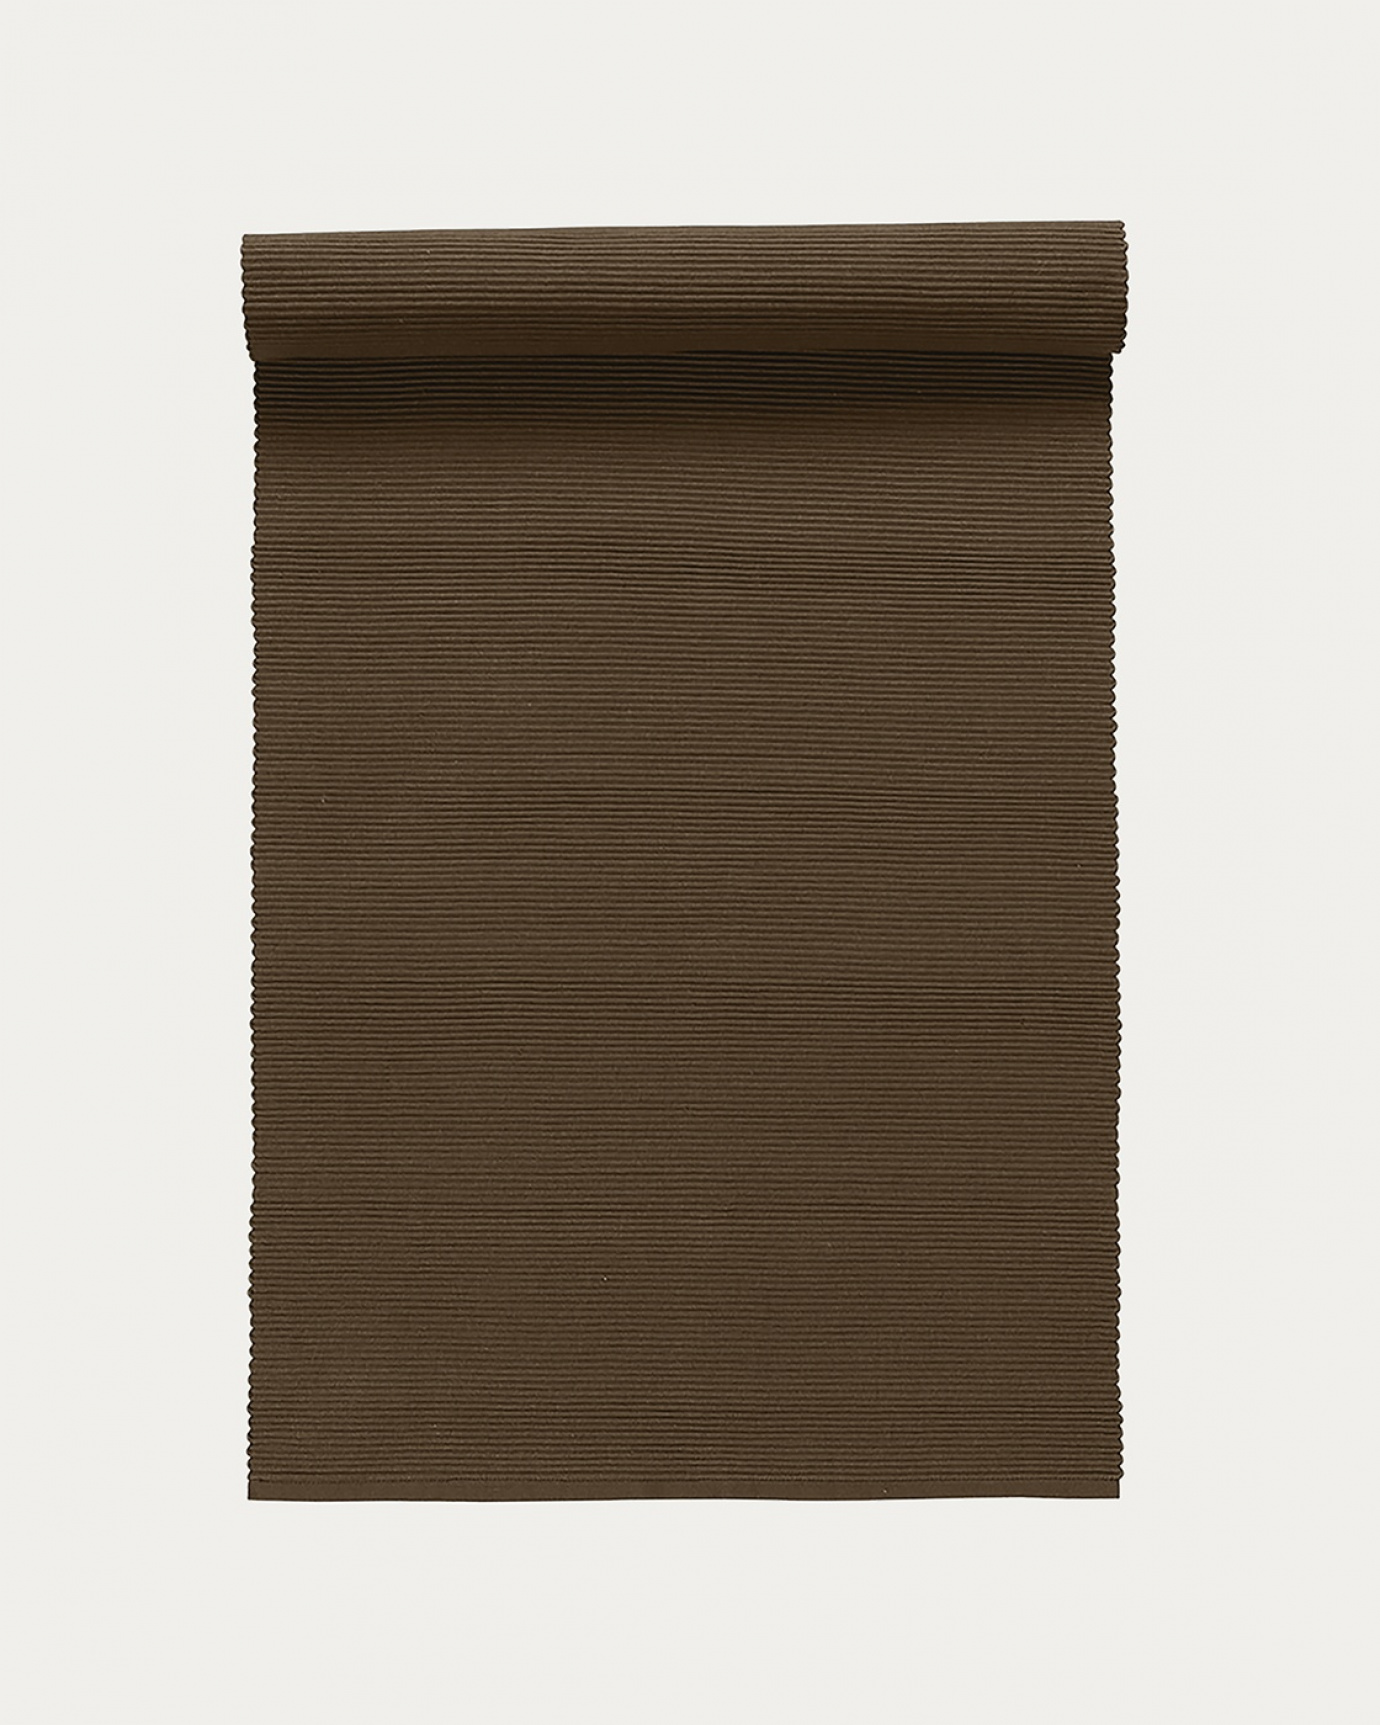 Produktbild bärenbraun UNI Tischläufer aus weicher Baumwolle in Rippenqualität von LINUM DESIGN. Größe 45x150 cm.